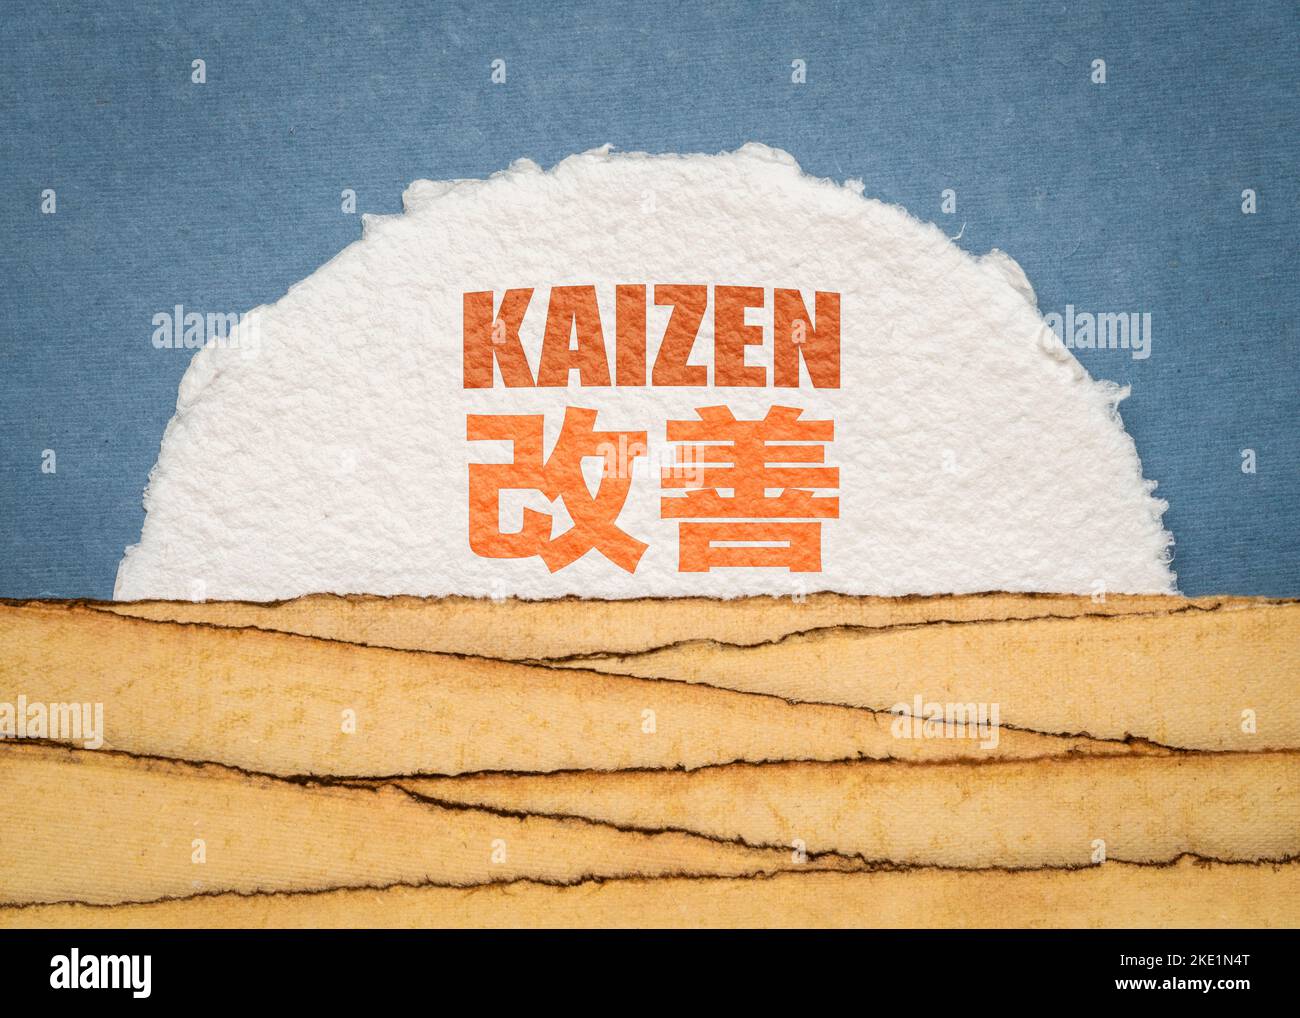 Kaizen - Japanische Geschäftsphilosophie, Konzept der kontinuierlichen Verbesserung - Englische und japanische Wörter gegen abstrakte Papierlandschaft Stockfoto